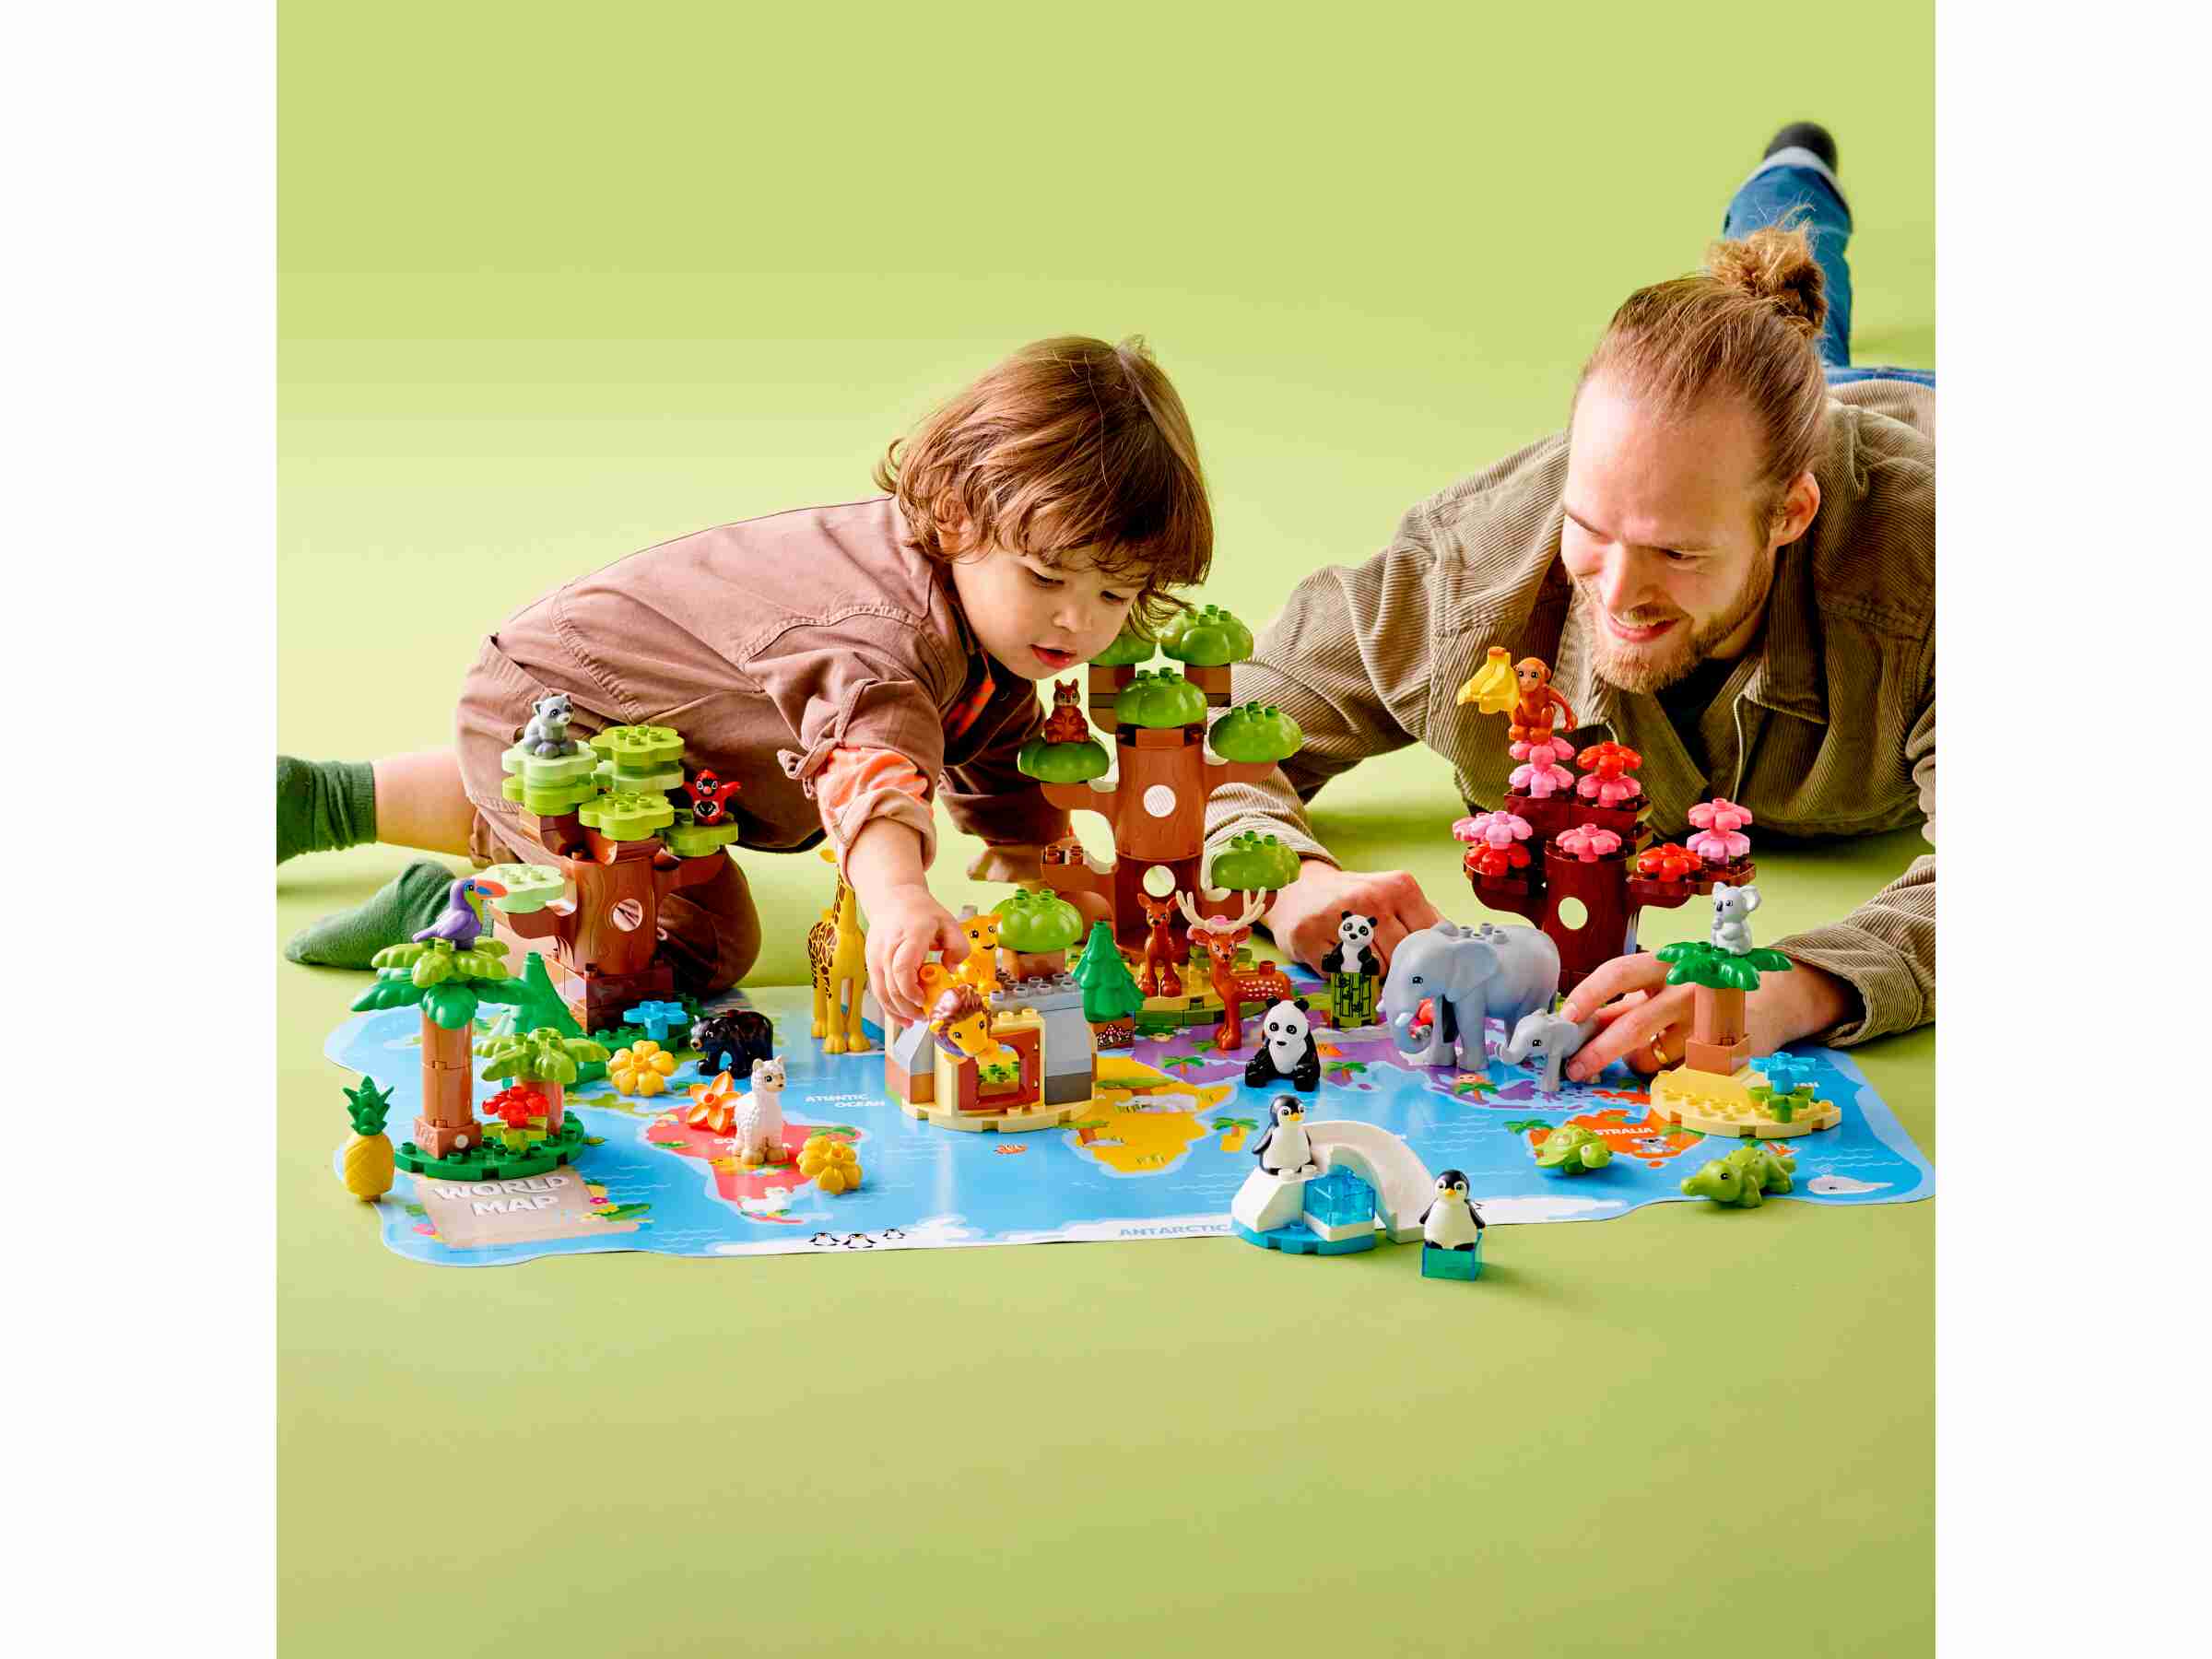 LEGO 10975 DUPLO Wilde Tiere der Welt Zoo Spielzeug mit Sound